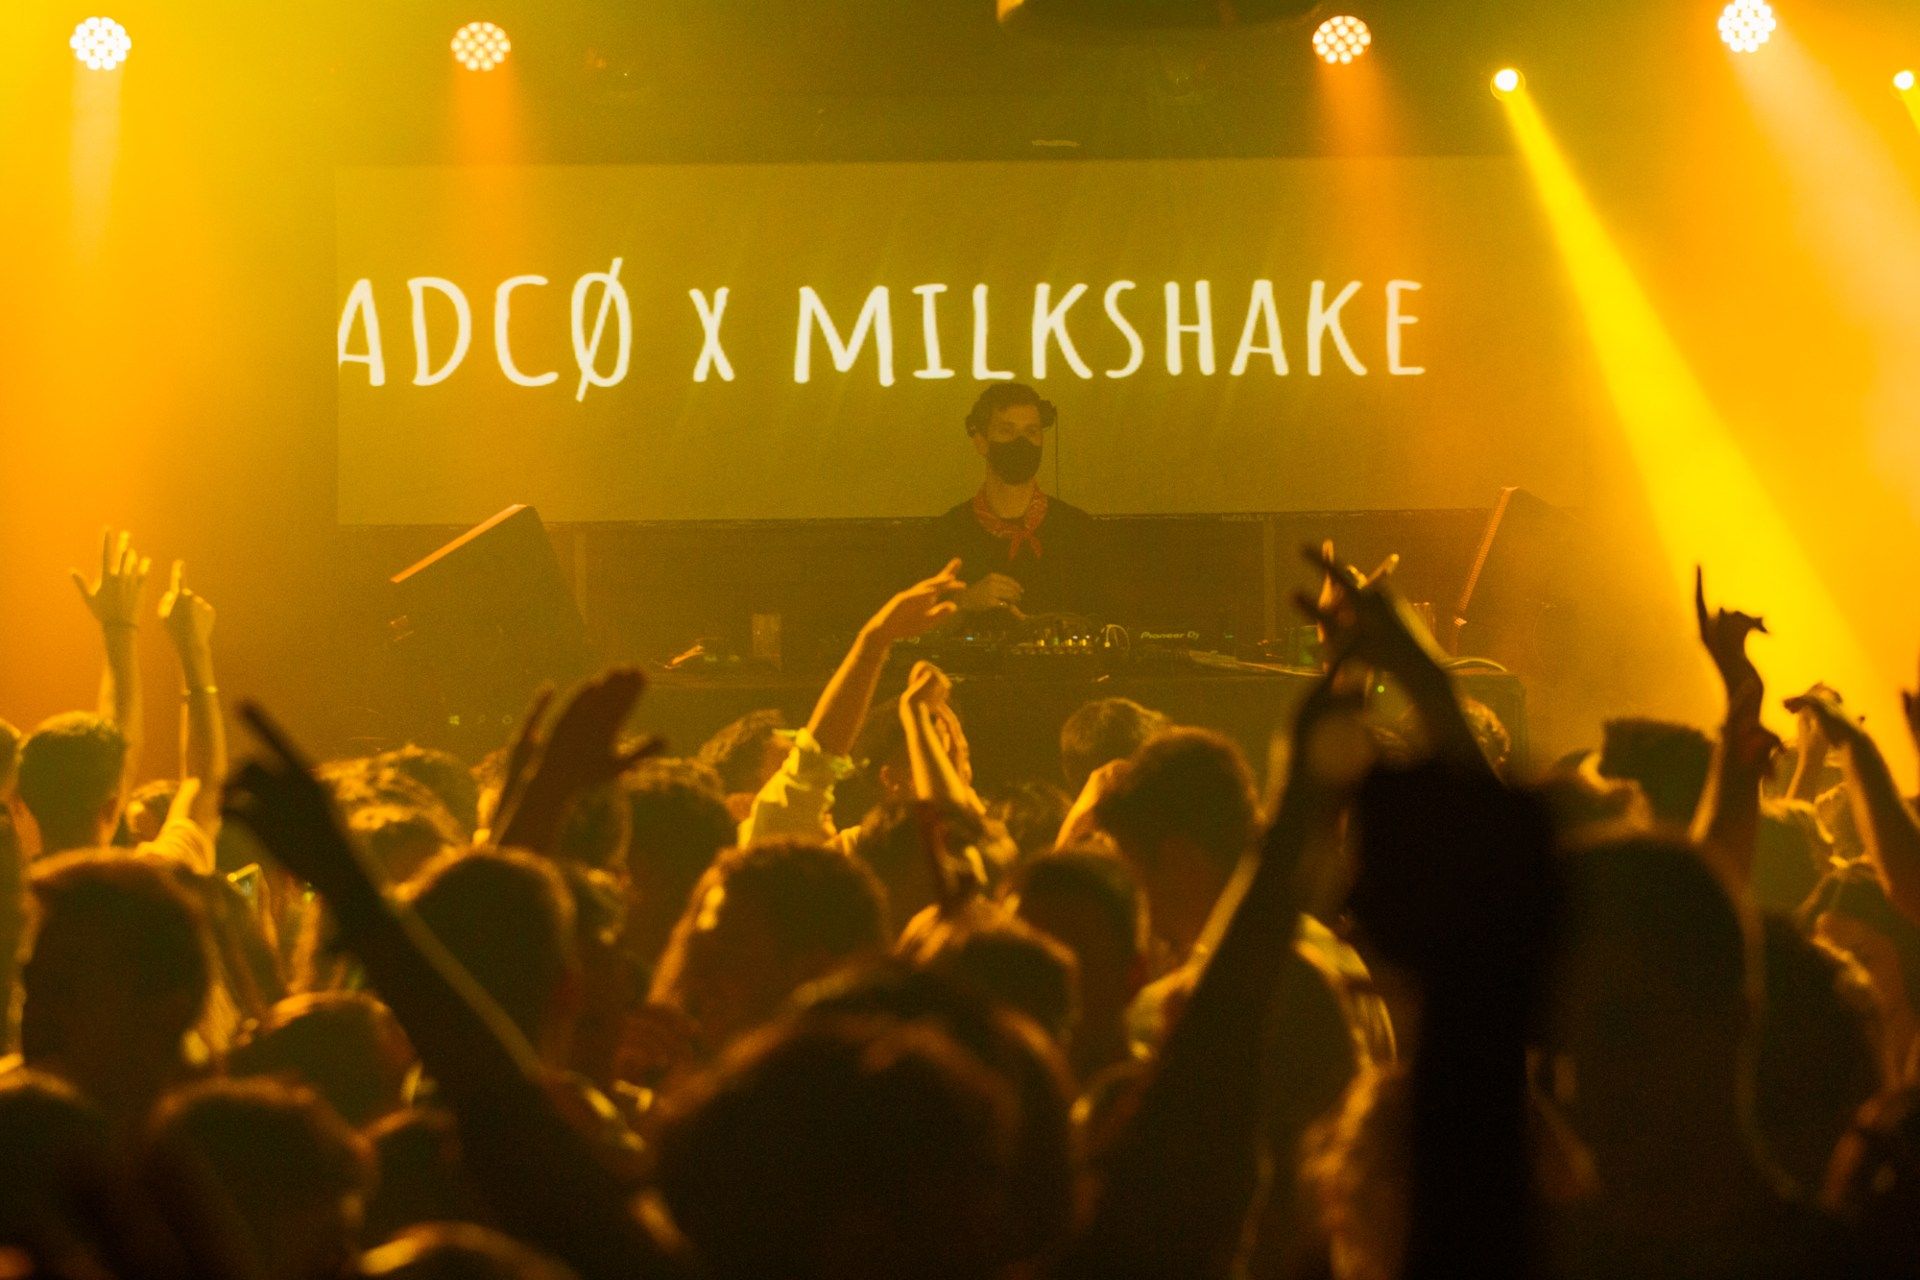 La (2) de Milkshake: Stile & ADCØ